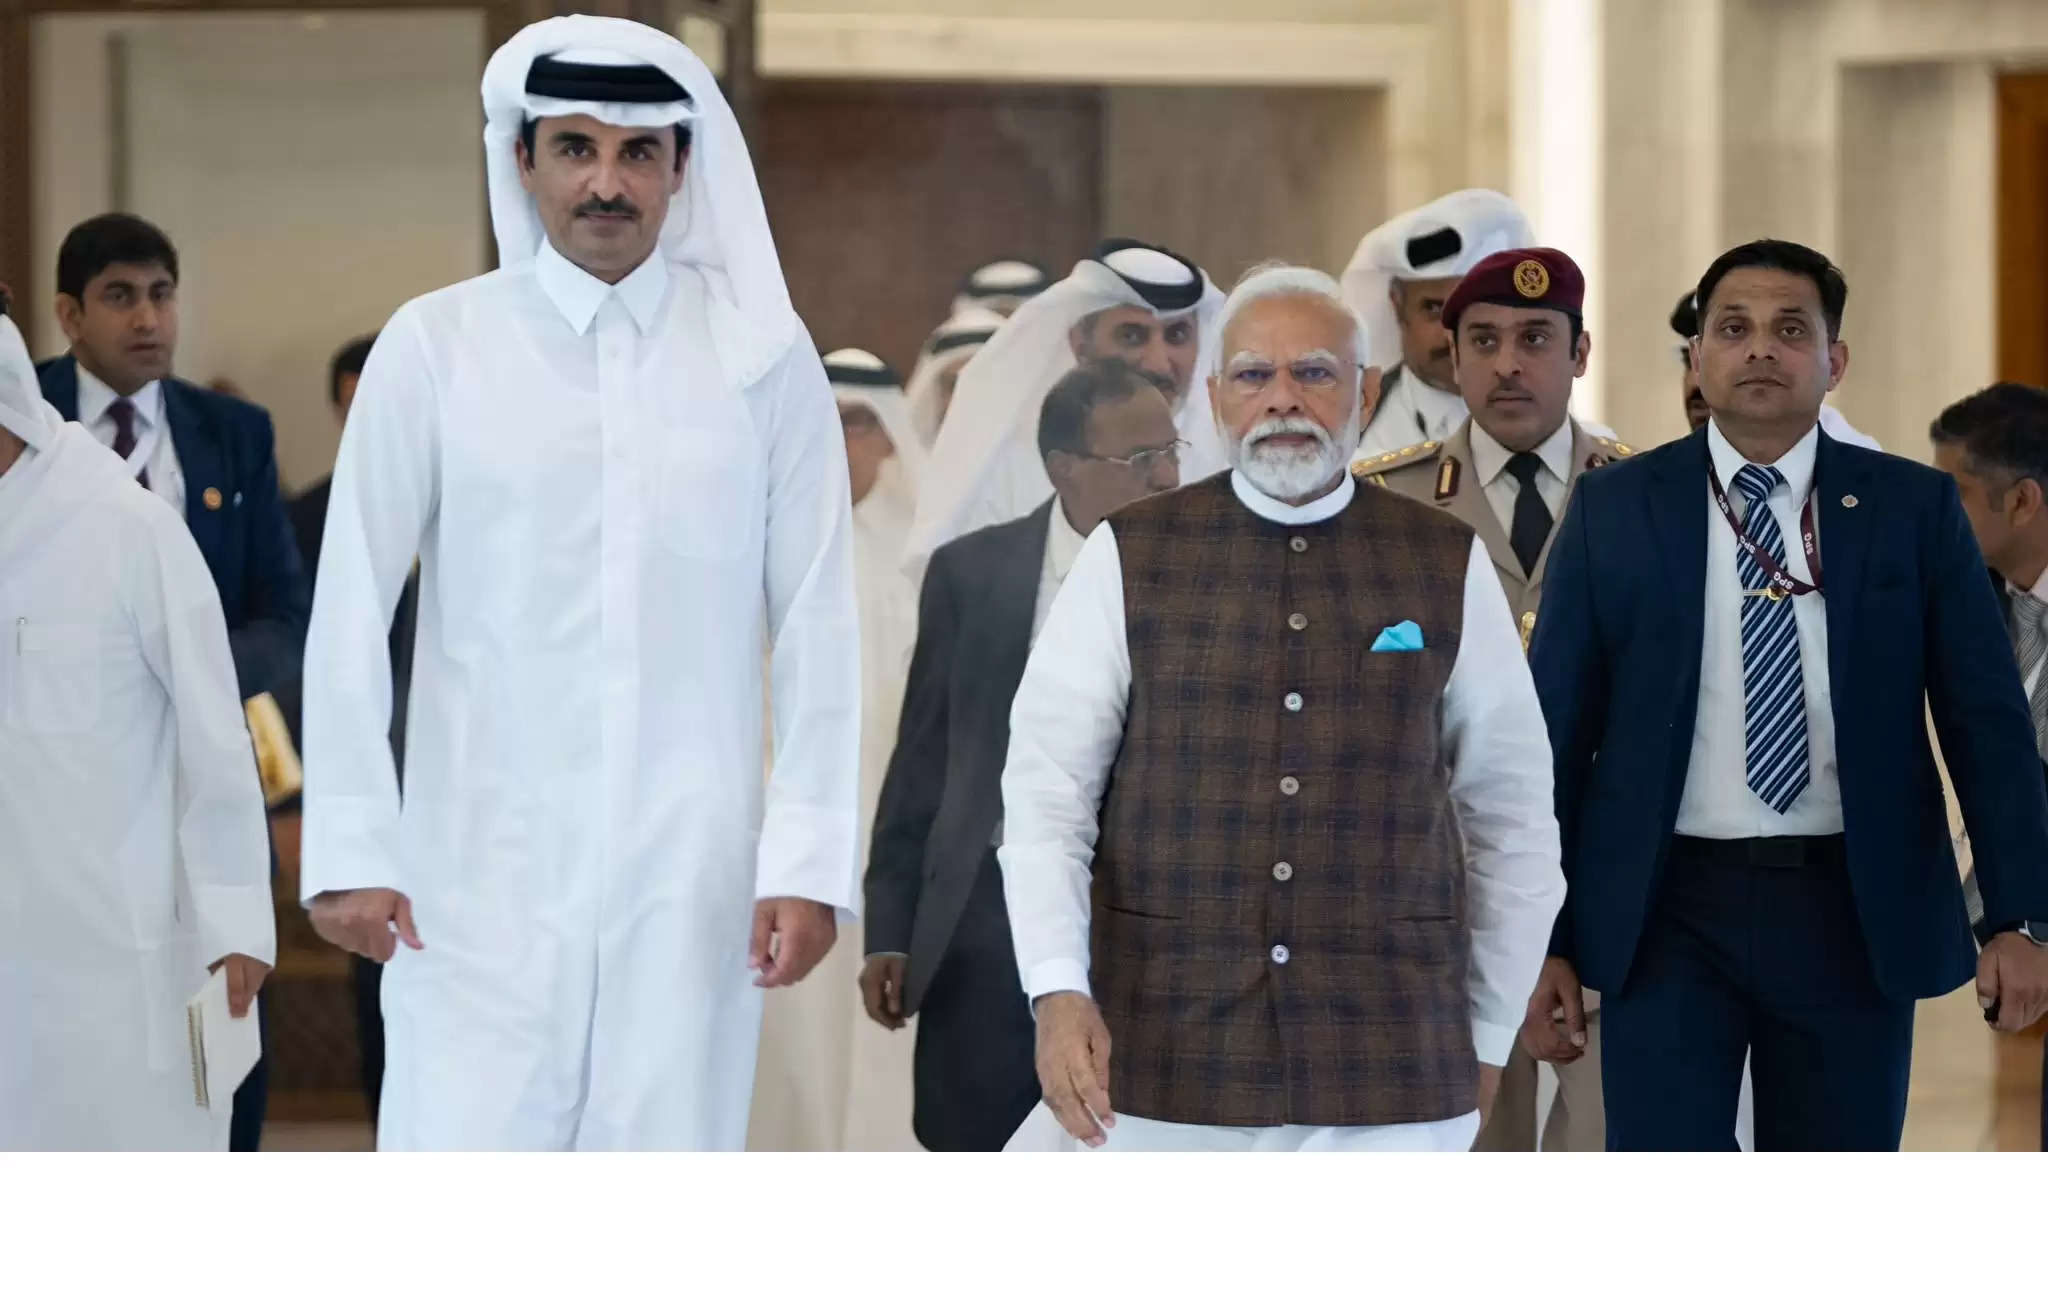 कतर ने दी भारत को शुभकामनाएं, प्रधानमंत्री नरेन्द्र मोदी ने अमीर तमीम बिन हमद अल थानी का आभार जताया